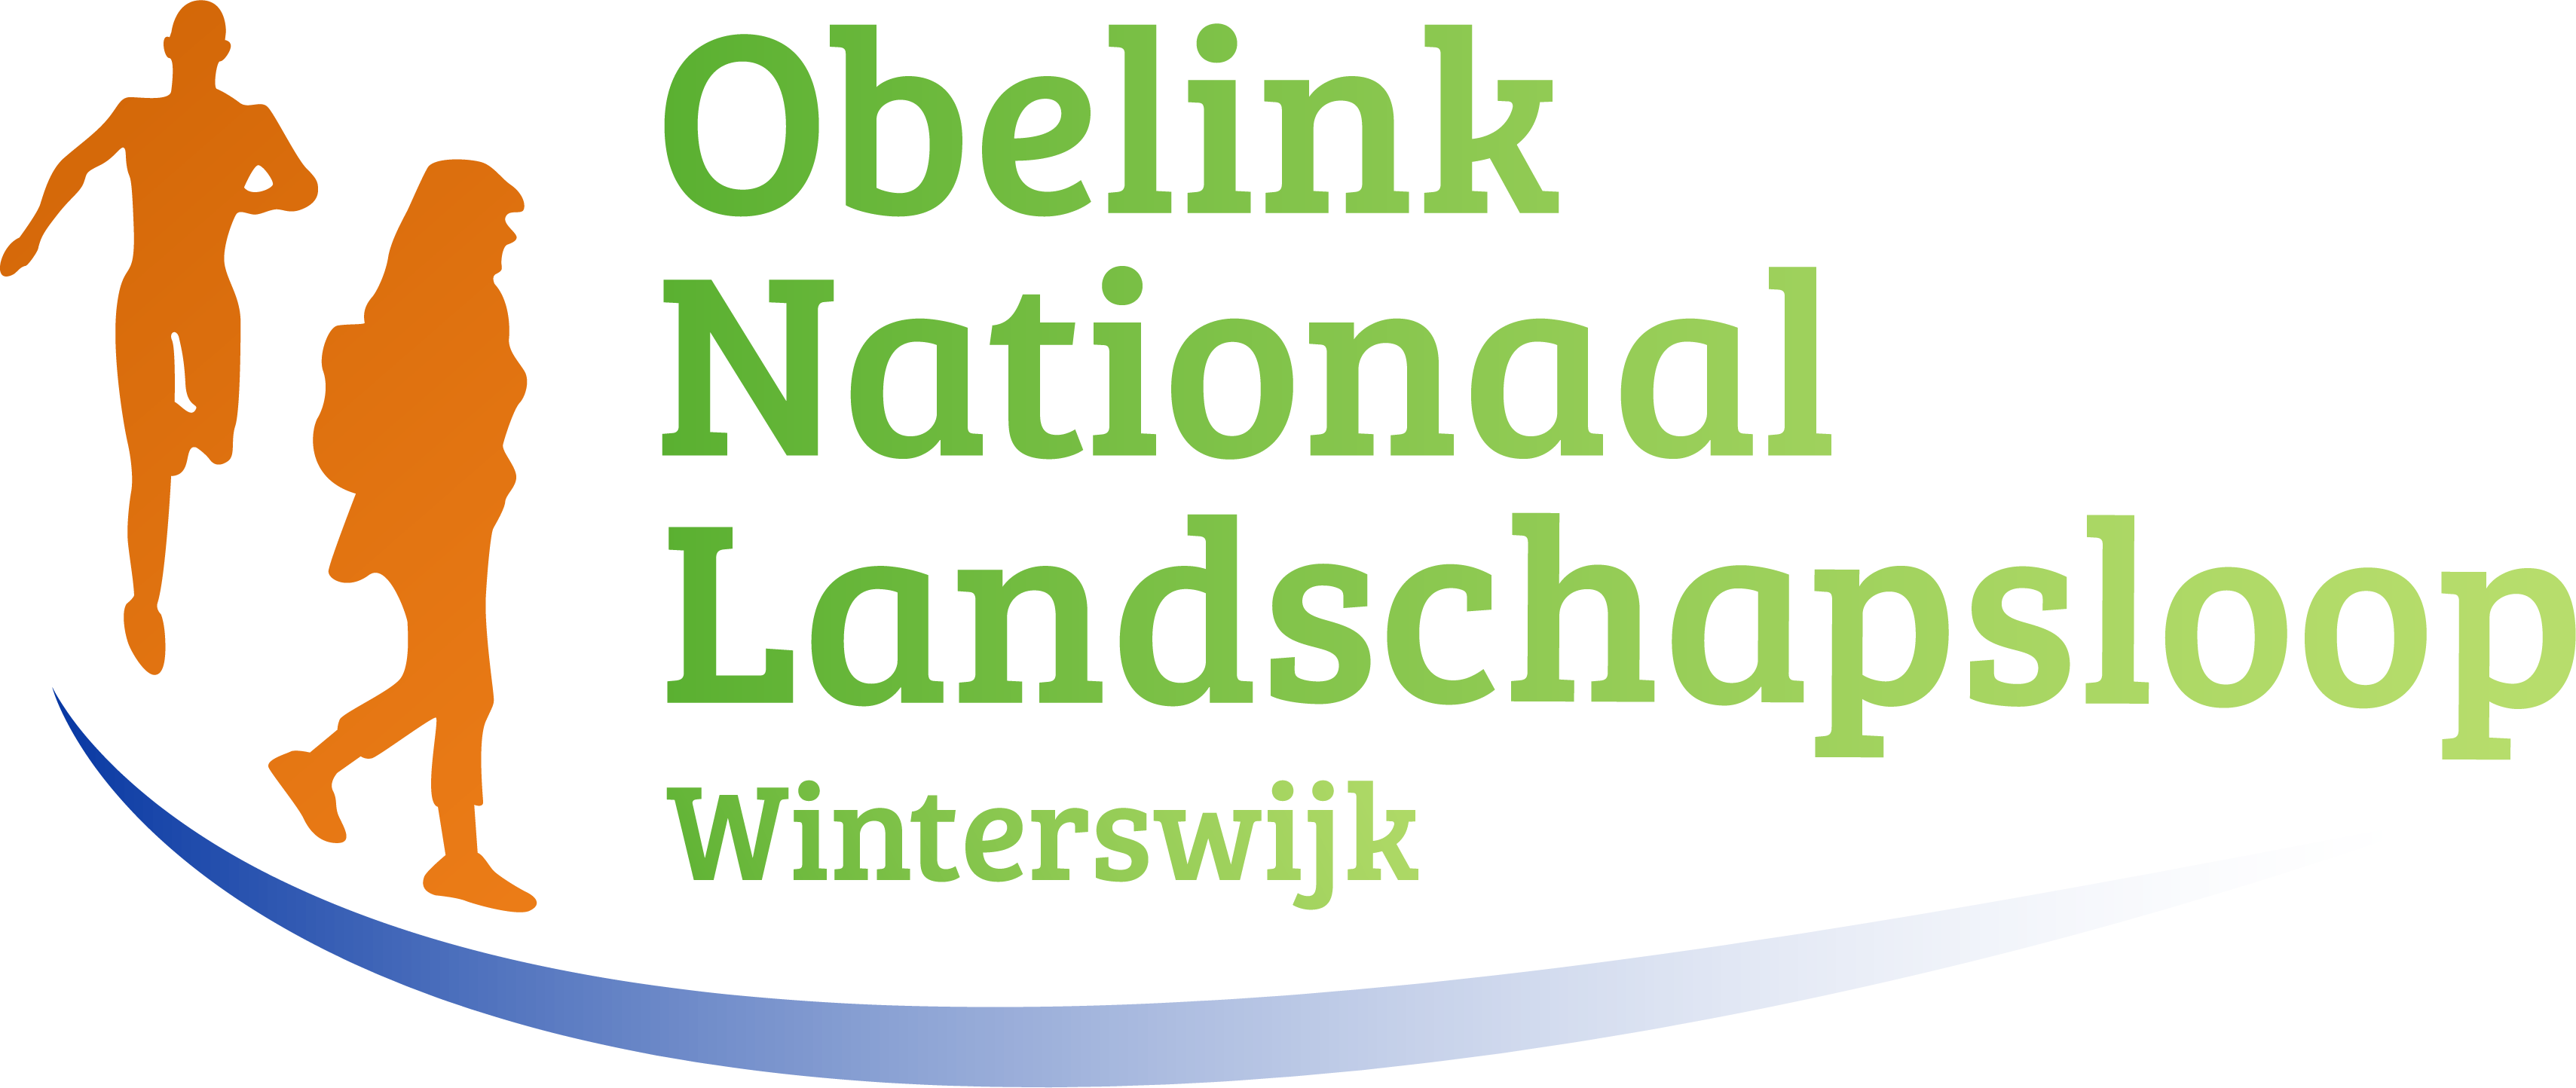 Stichting Nationaal Landschapsloop Winterswijk